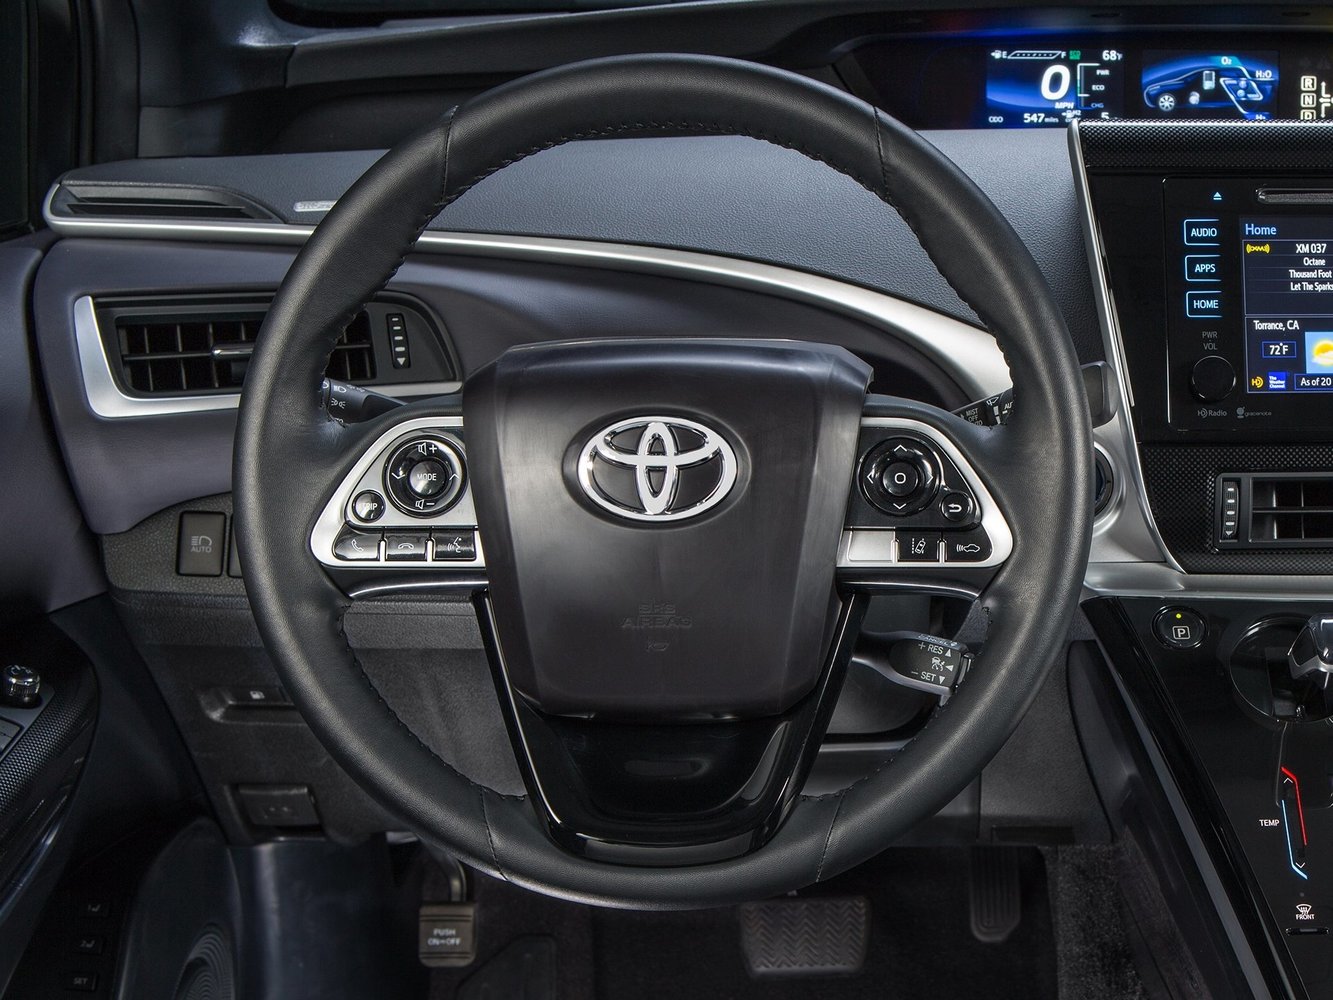 седан Toyota Mirai 2015 - 2016г выпуска модификация Комплектация